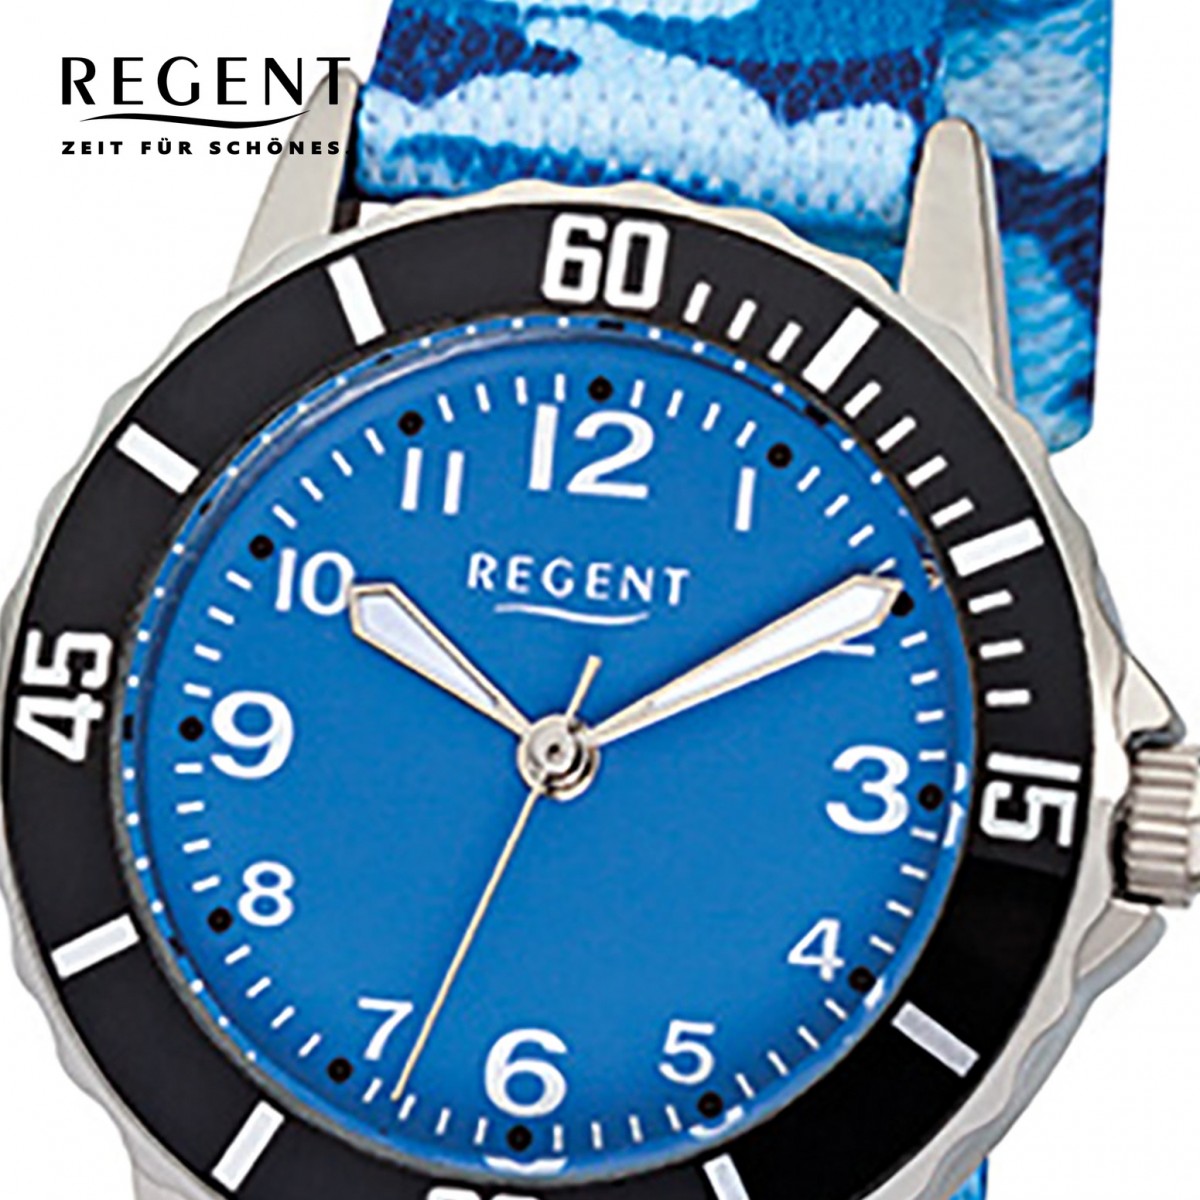 Textil, Quarz-Uhr blau Regent F-940 Stoff-Armband Kinder-Armbanduhr URF940